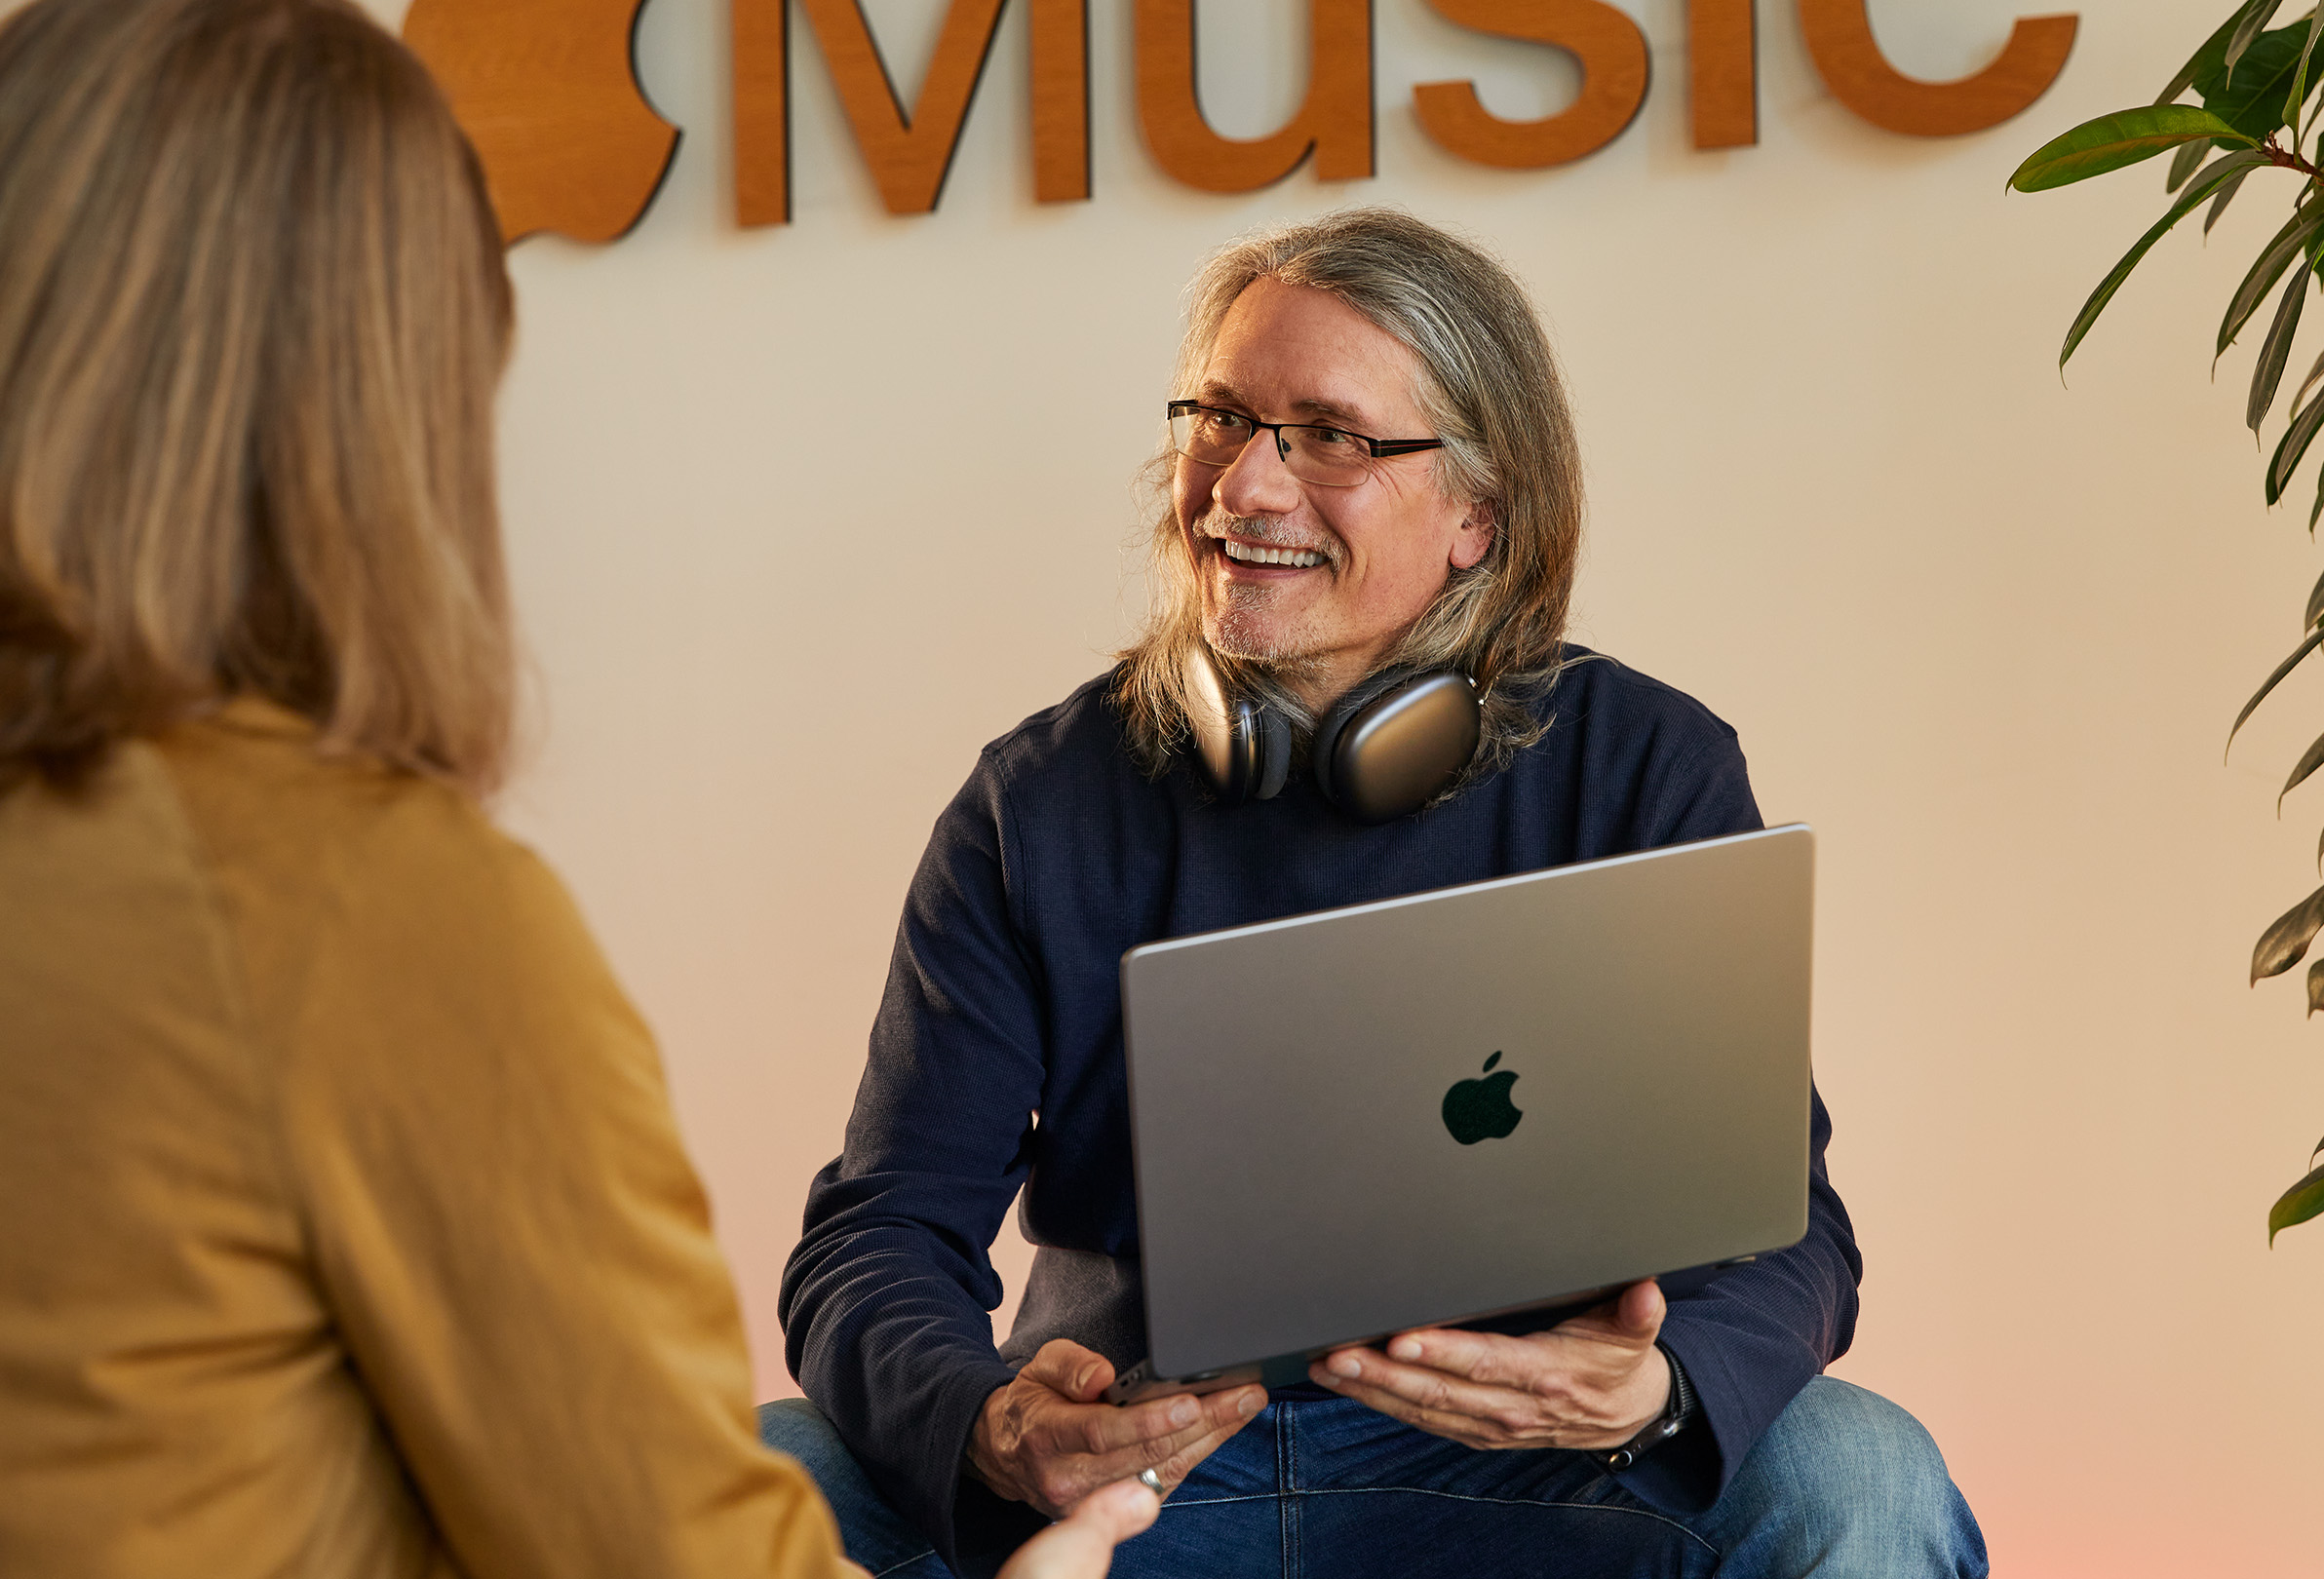 Zwei Apple Mitarbeiter:innen im Gespräch, ein Mitarbeiter hat ein MacBook in der Hand und sitzt vor einer Wand mit einem Apple Music Logo.